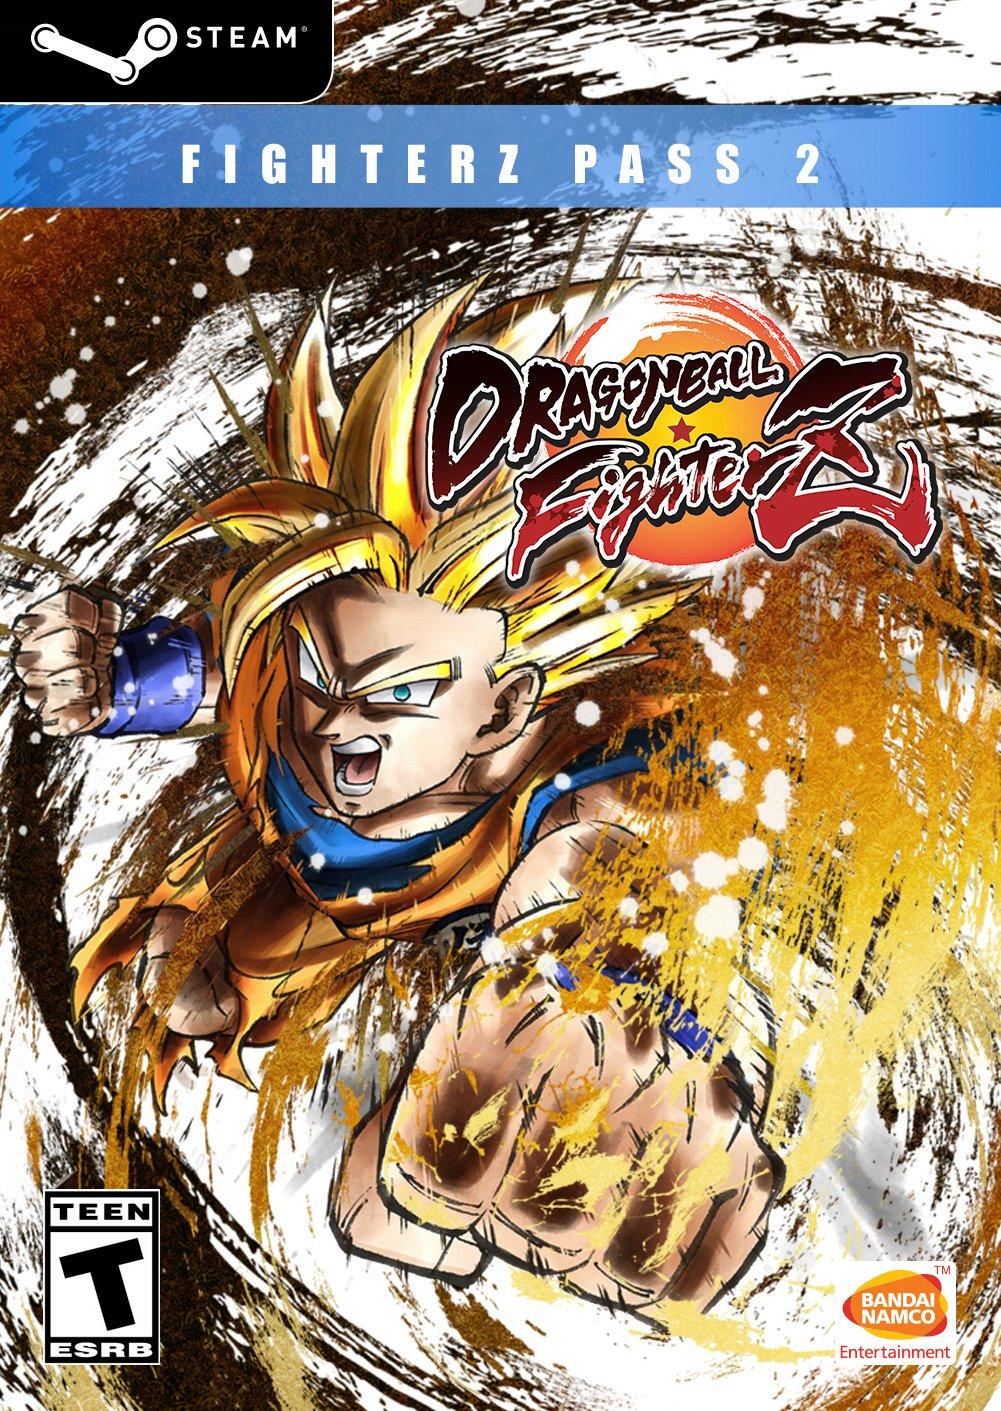 Dragon Ball FighterZ Pass 2 DLC